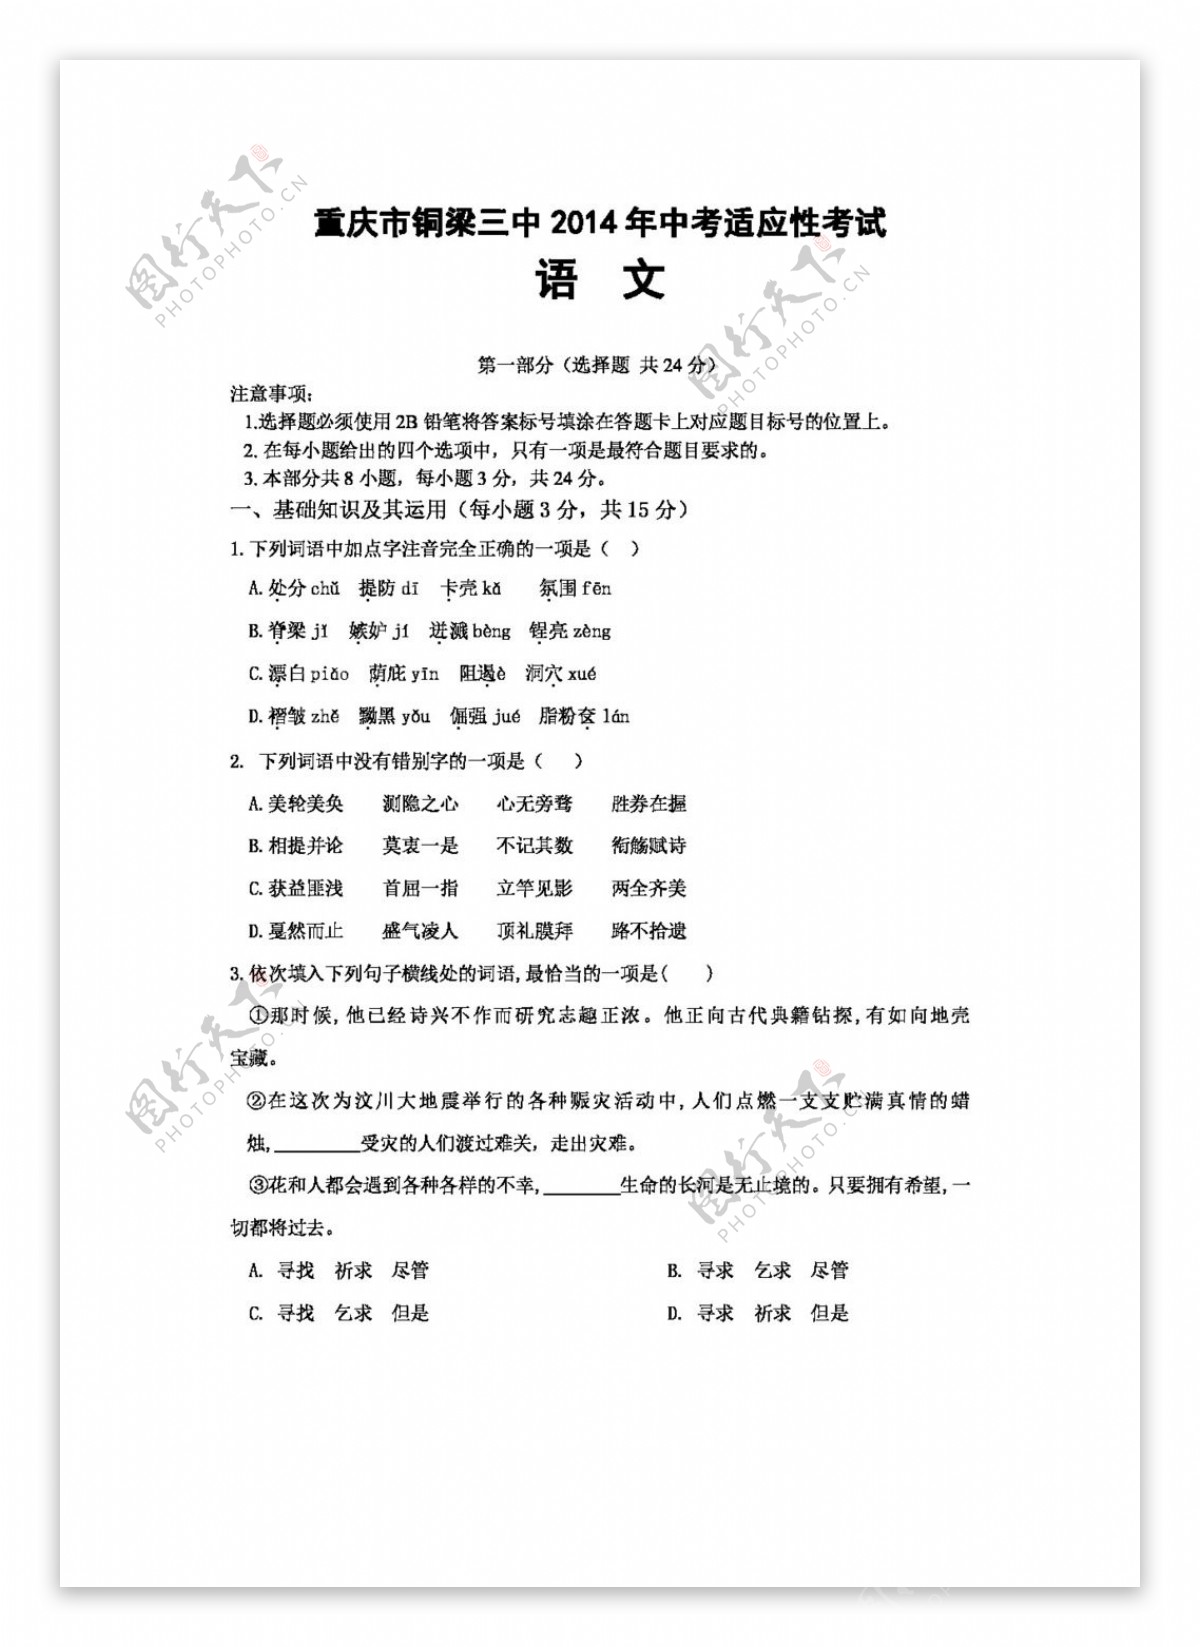 语文苏教版中考适应性考试九年级语文3